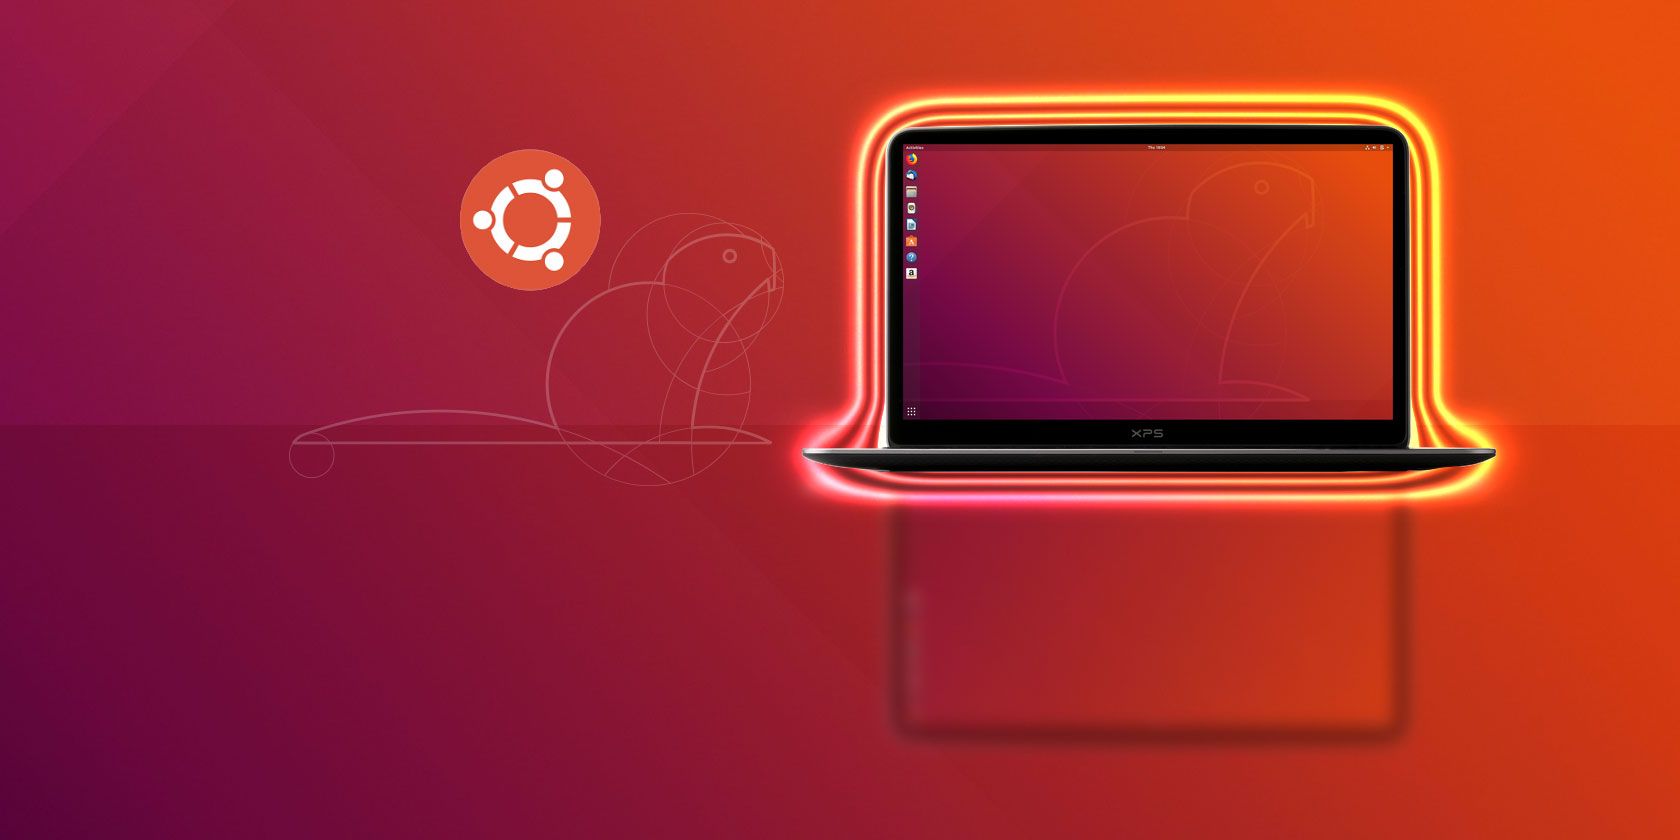 new-features-ubuntu-1804